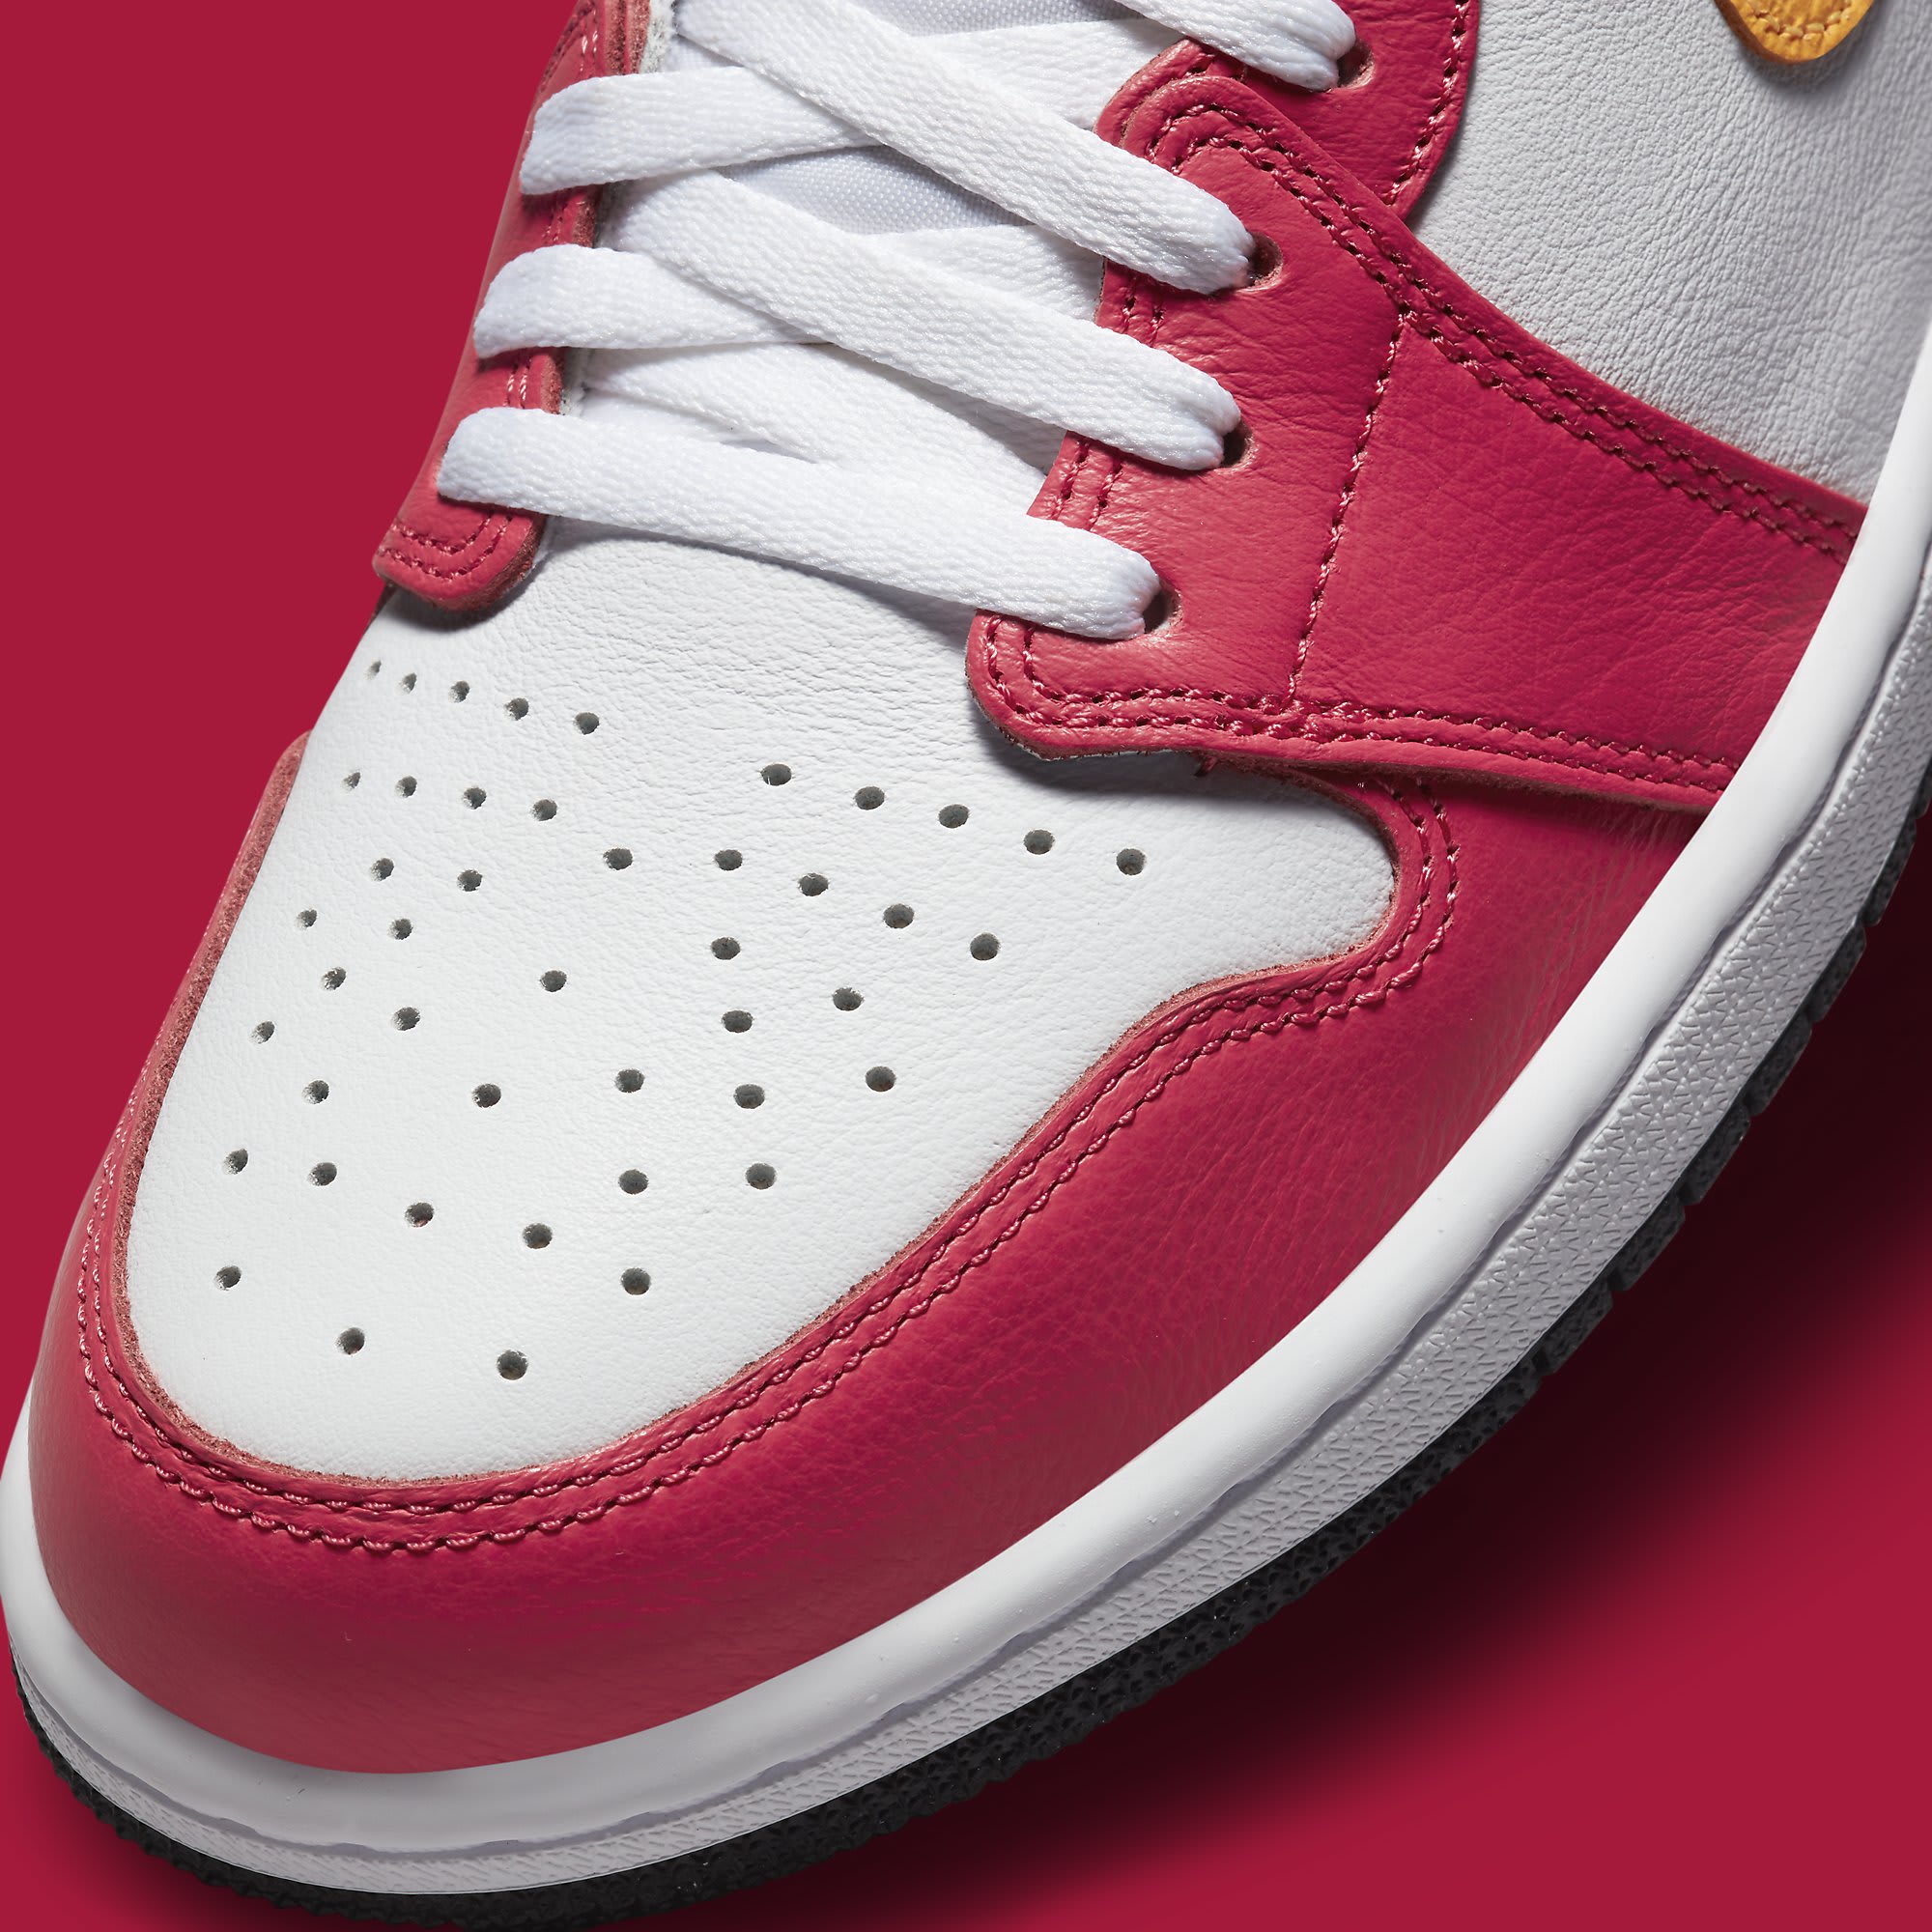 Air Jordan 1 Light Fusion Red Release Date 555088-603 Toe Detail